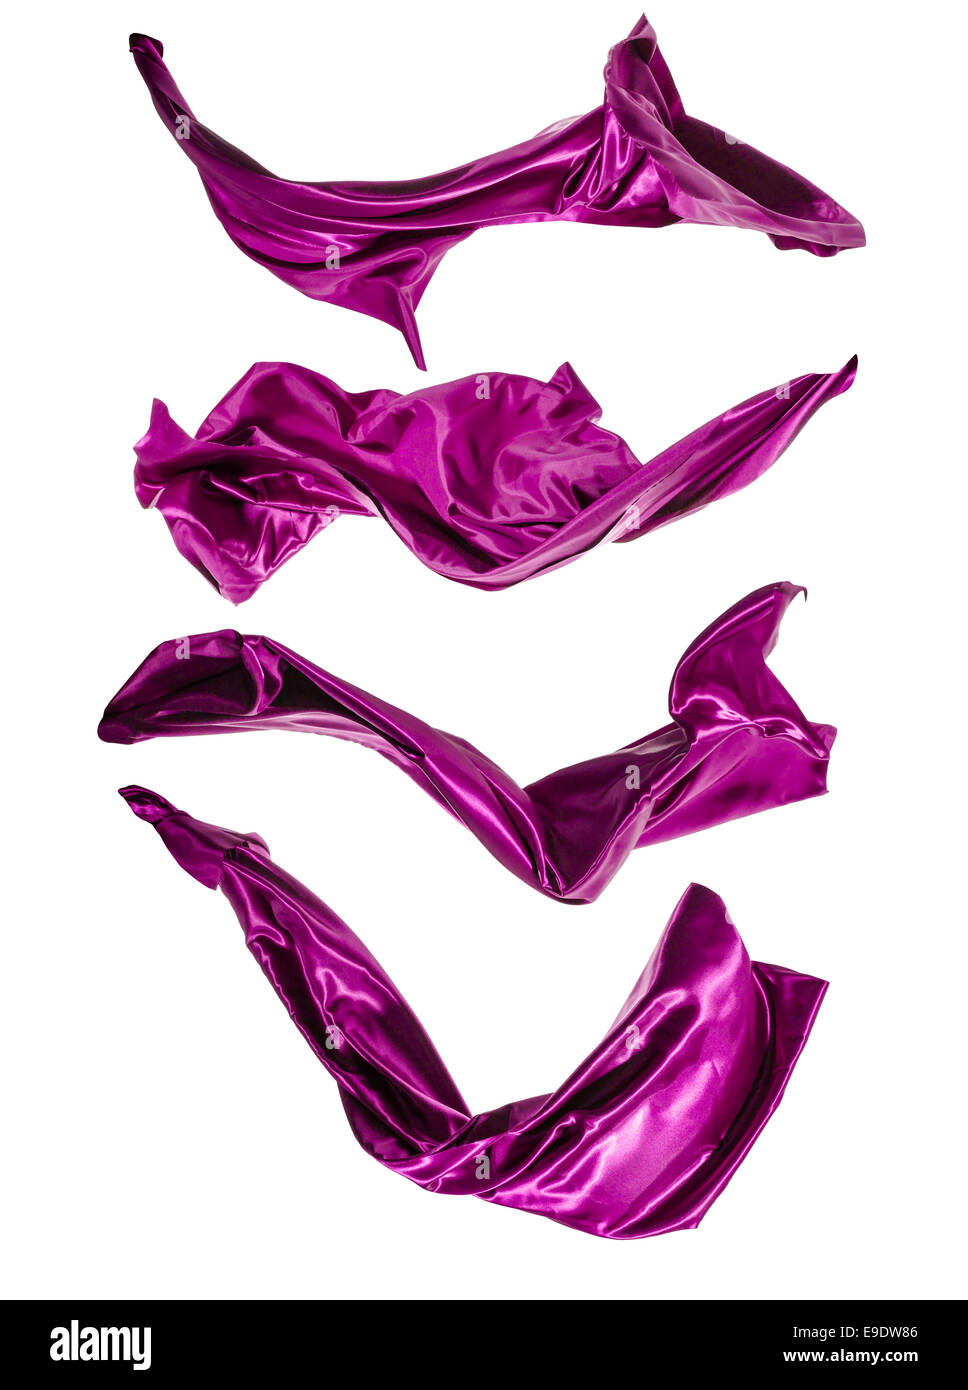 Isolated shots of freeze motion of purple shape, isolated on white background Stock Photo